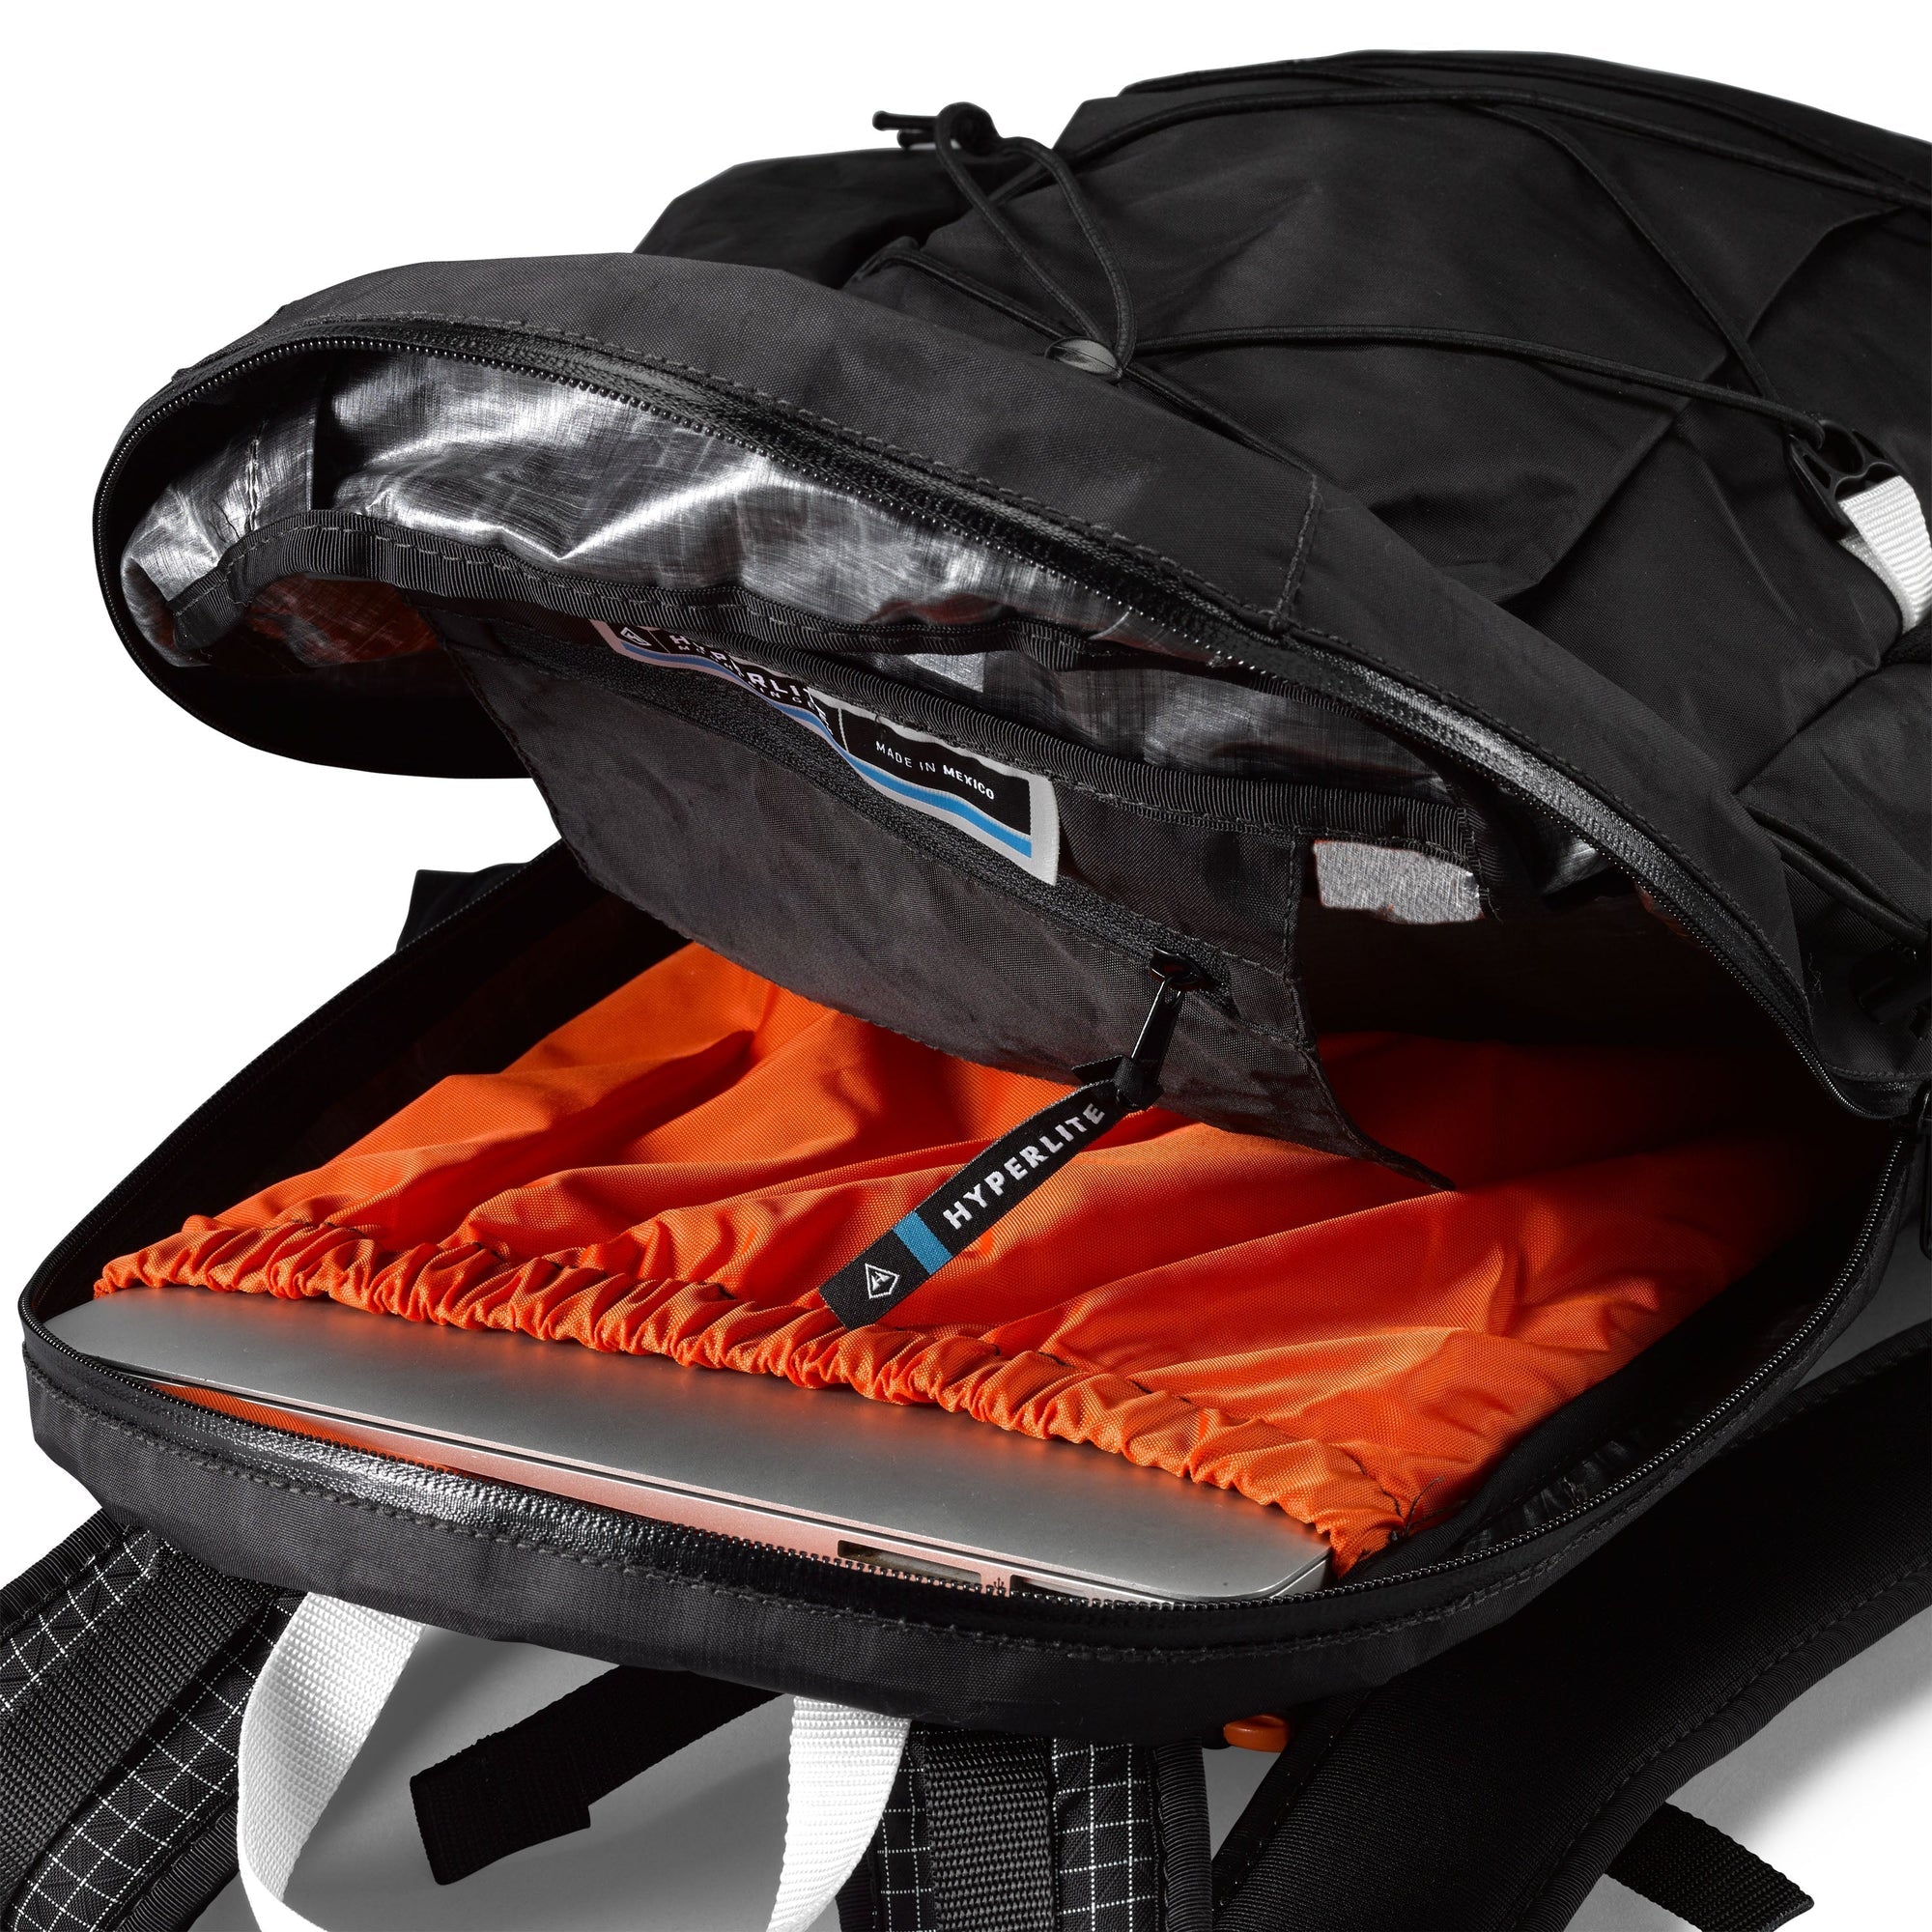 Hyperlite Mountain Gear - Daybreak Ultralight Backpack (17L 